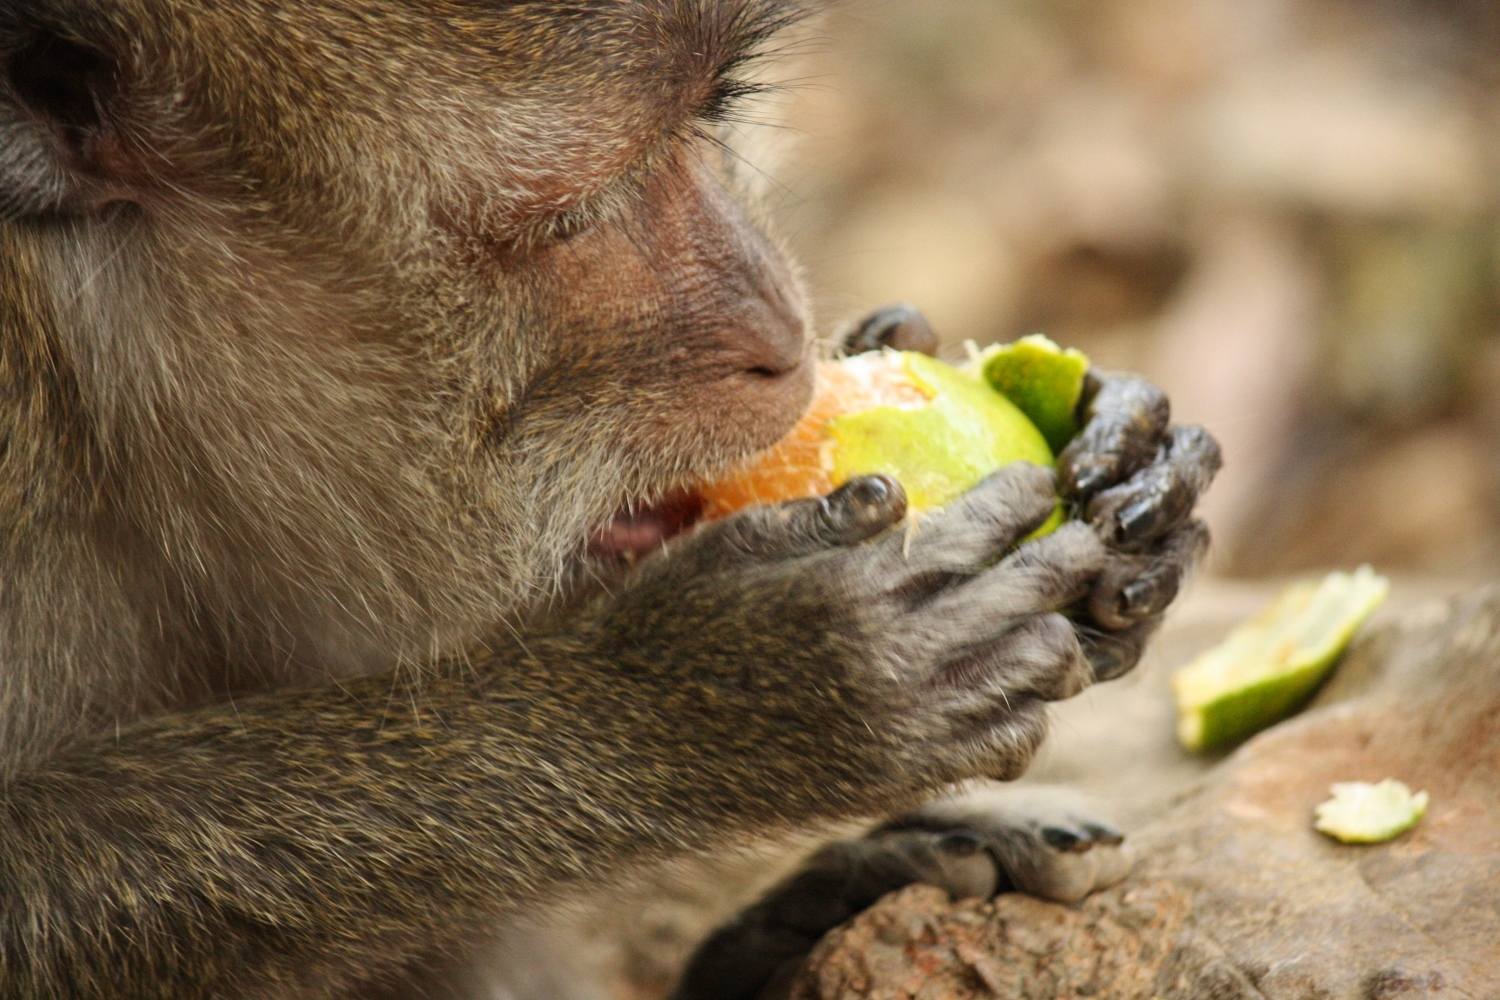 Monkey eating an Orange – Sayonara Pushek
